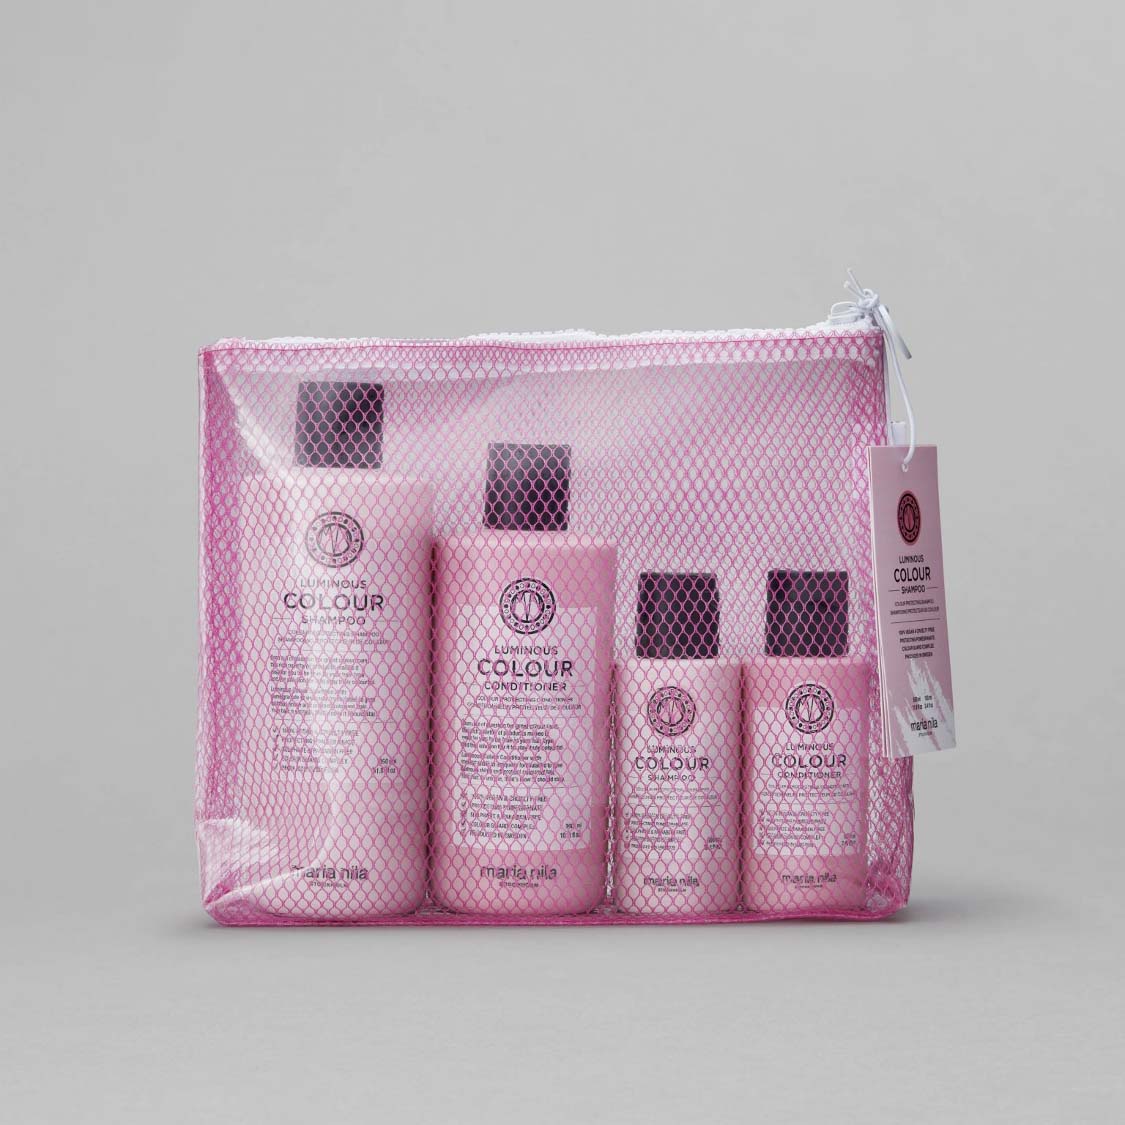 Maria Nila Colour Beauty Bag - frgbevarande - Hairsale.se